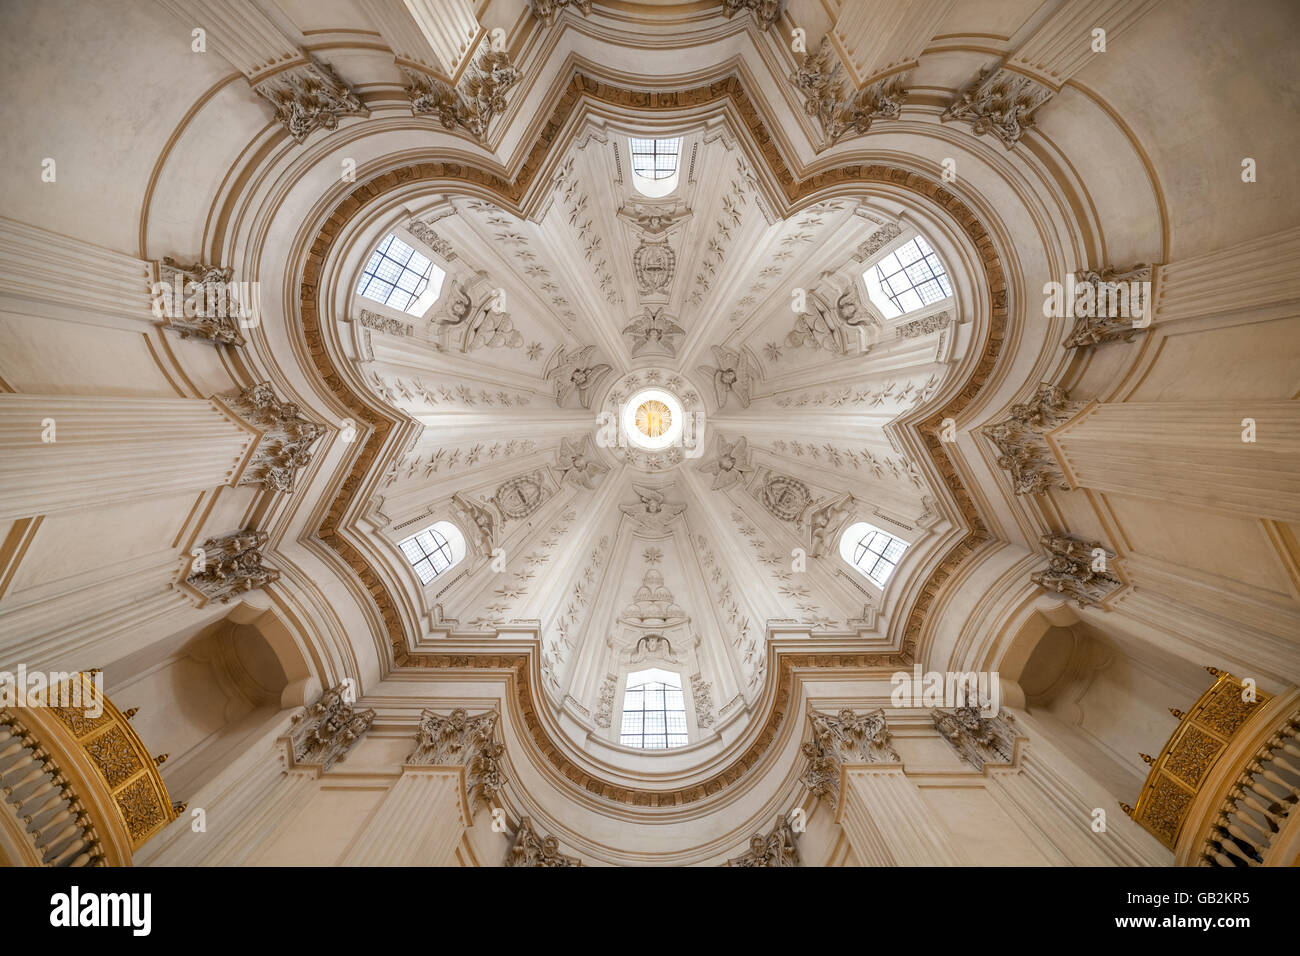 The dome of Sant'Ivo alla Sapienza by Francesco Borromini Stock Photo